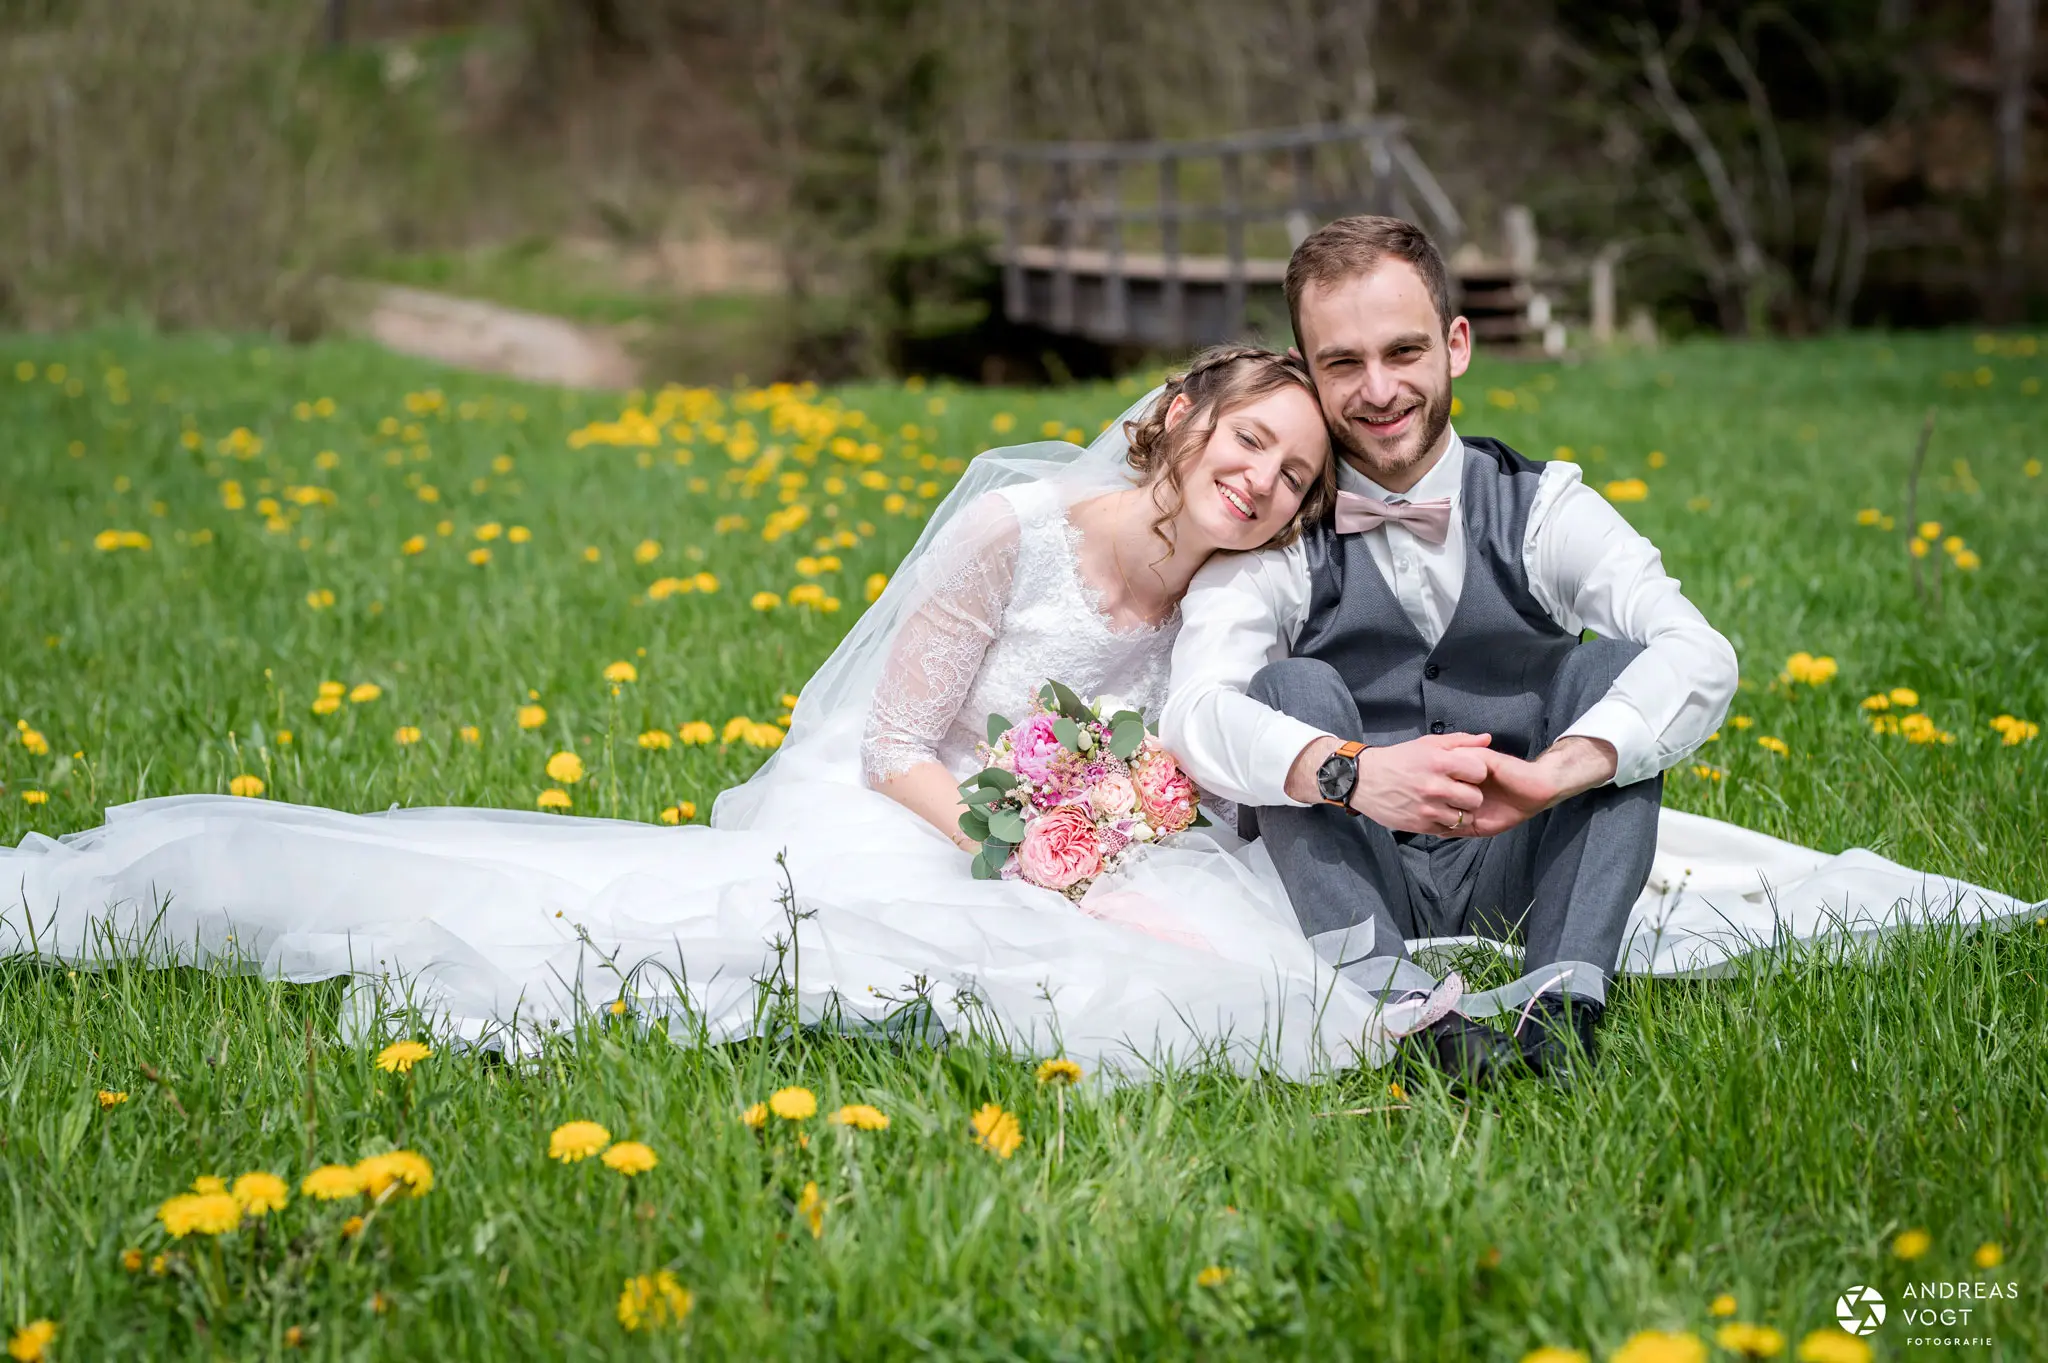 Brautpaarfotos in der Blumenwiese - Fotograf Andreas Vogt